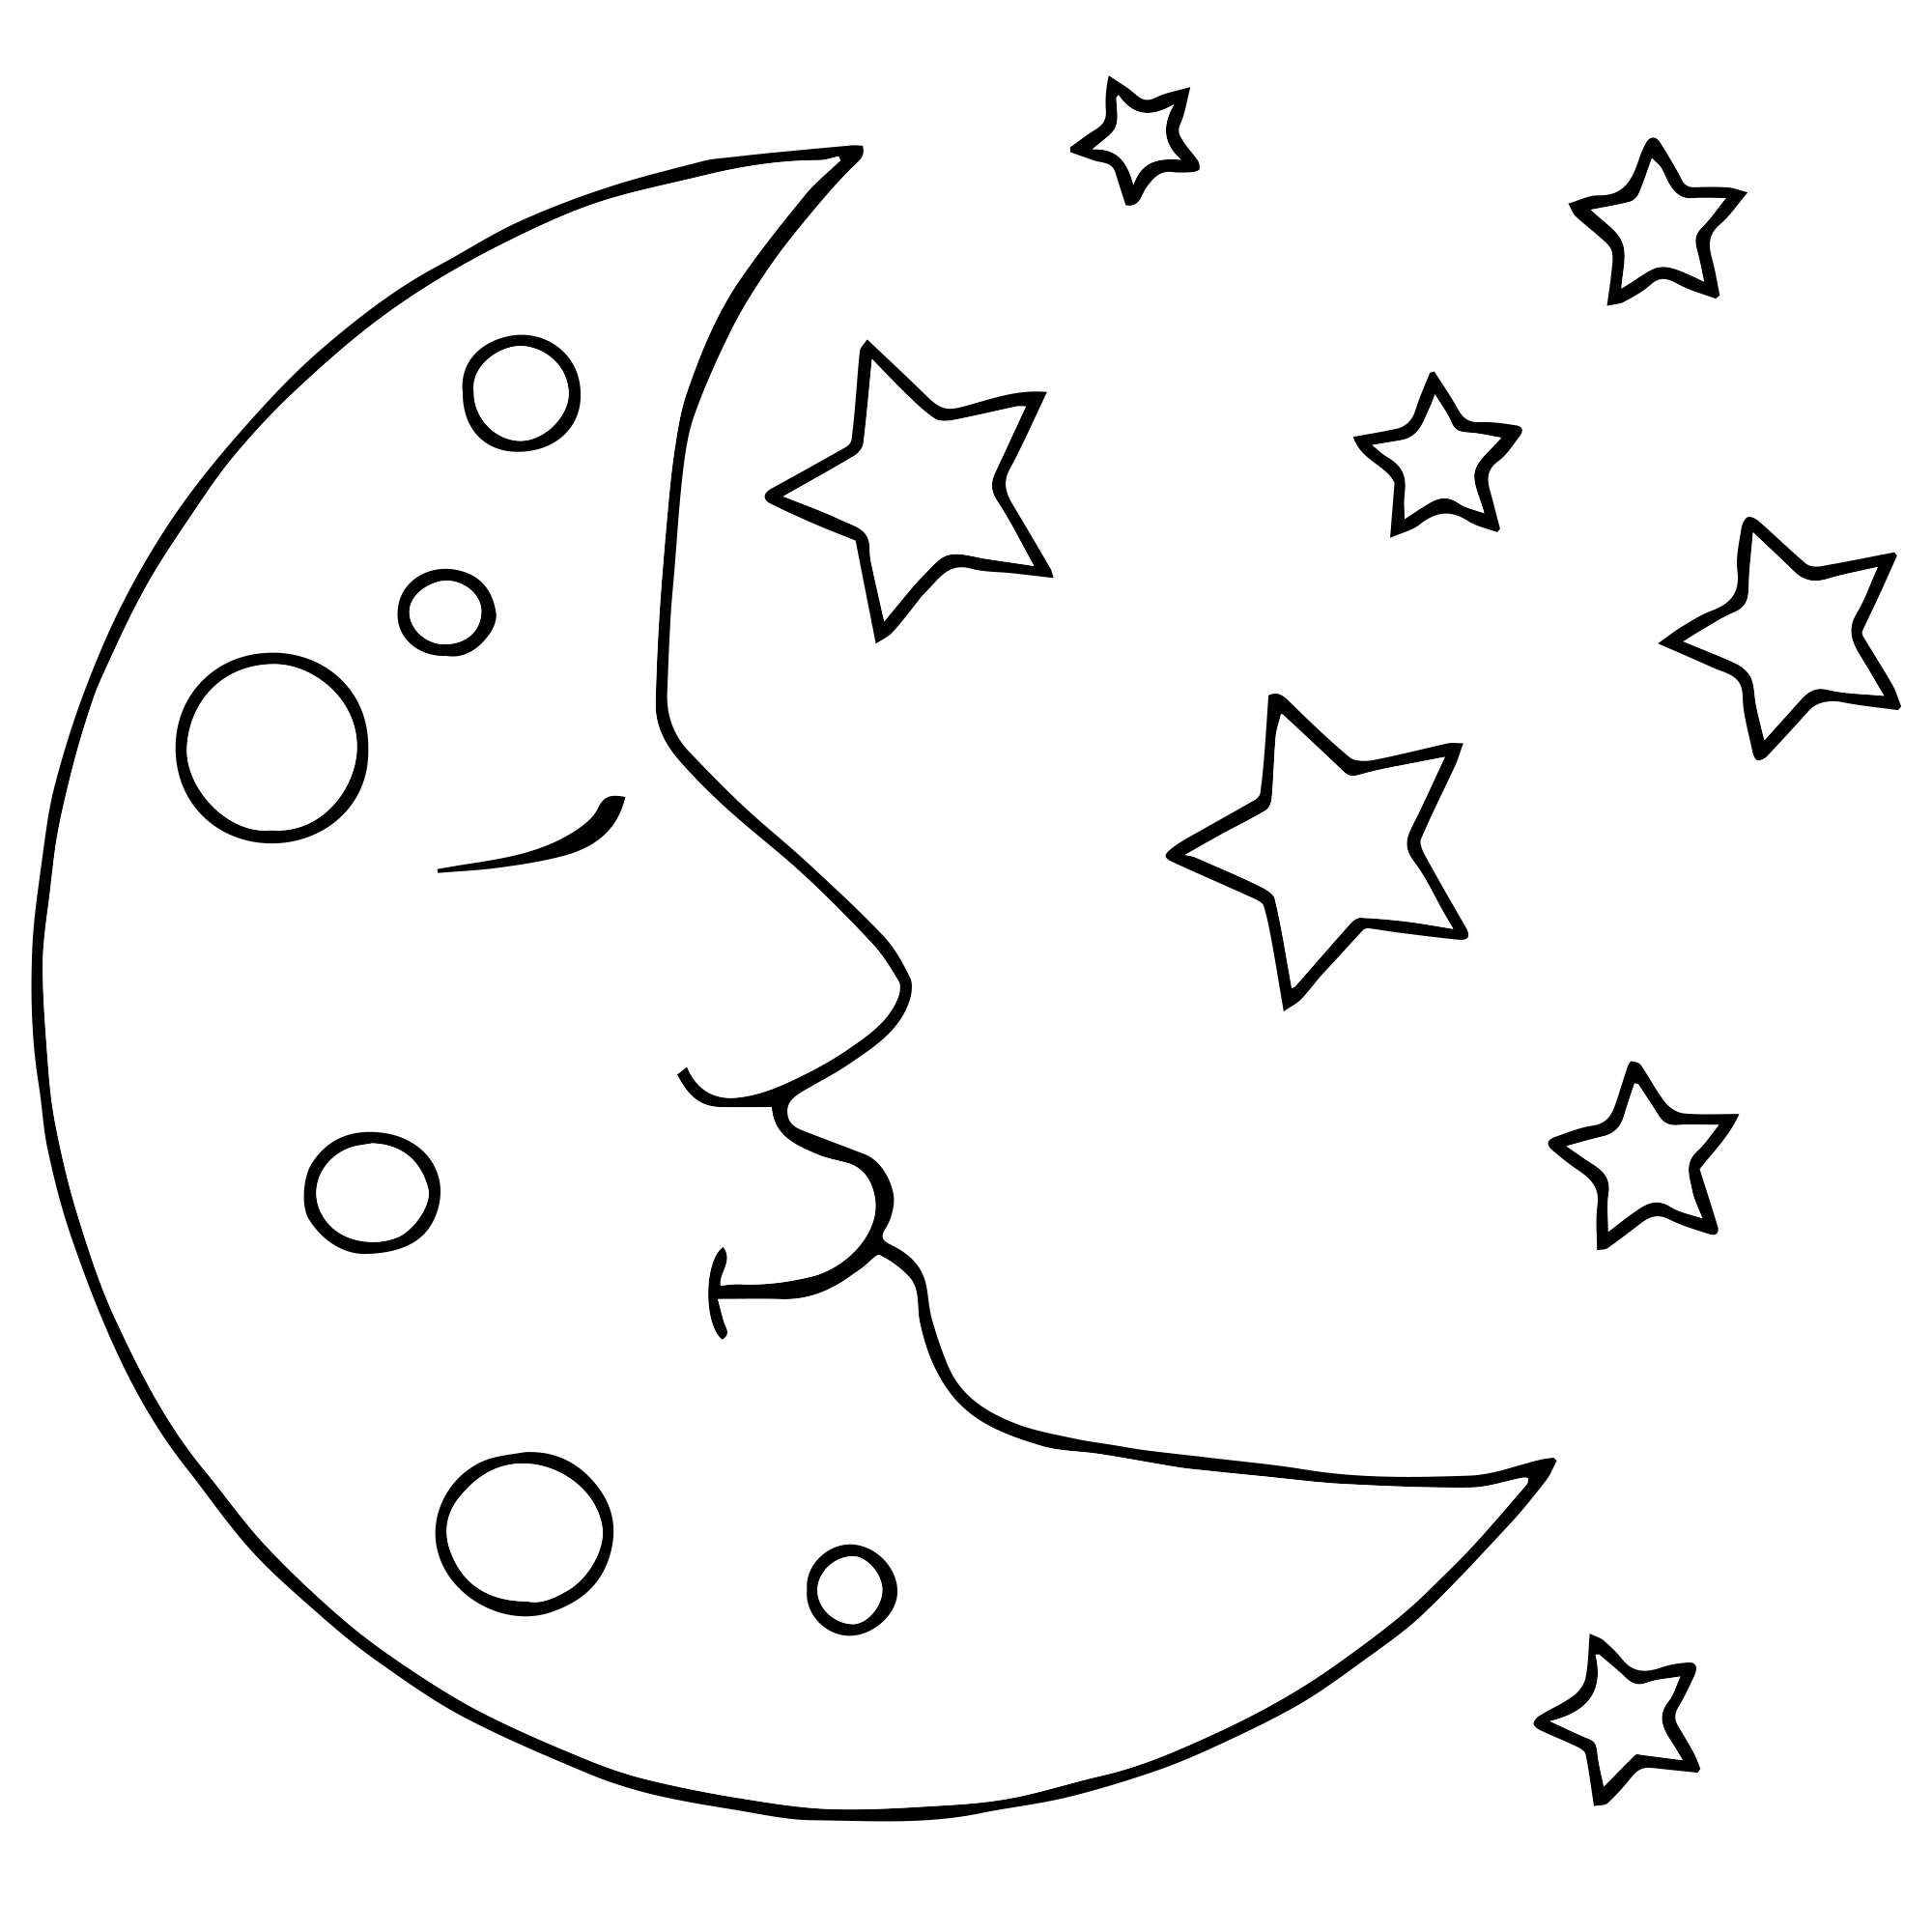 Раскраски Луна, Звёзды | Солнце, звёзды, планеты, скачать и распечатать бесплатно - Страница 2